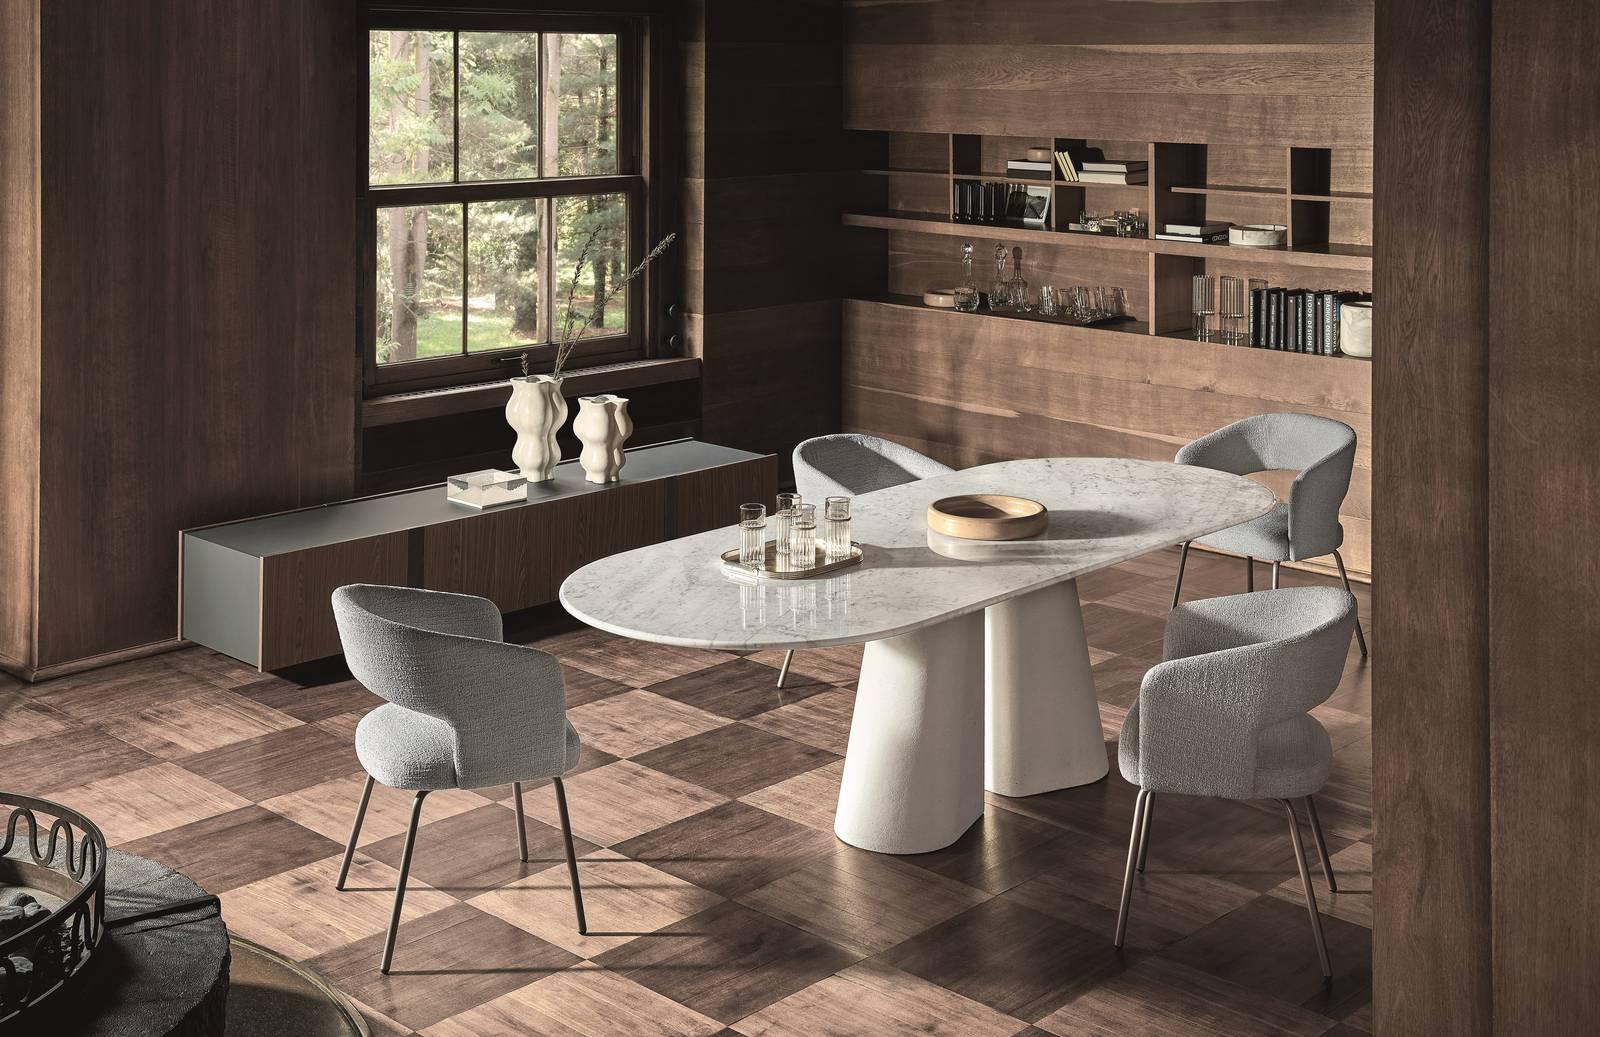 Sedie per il tavolo del soggiorno: 37 modelli in legno, in metallo,  imbottiti, con o senza braccioli - Cose di Casa